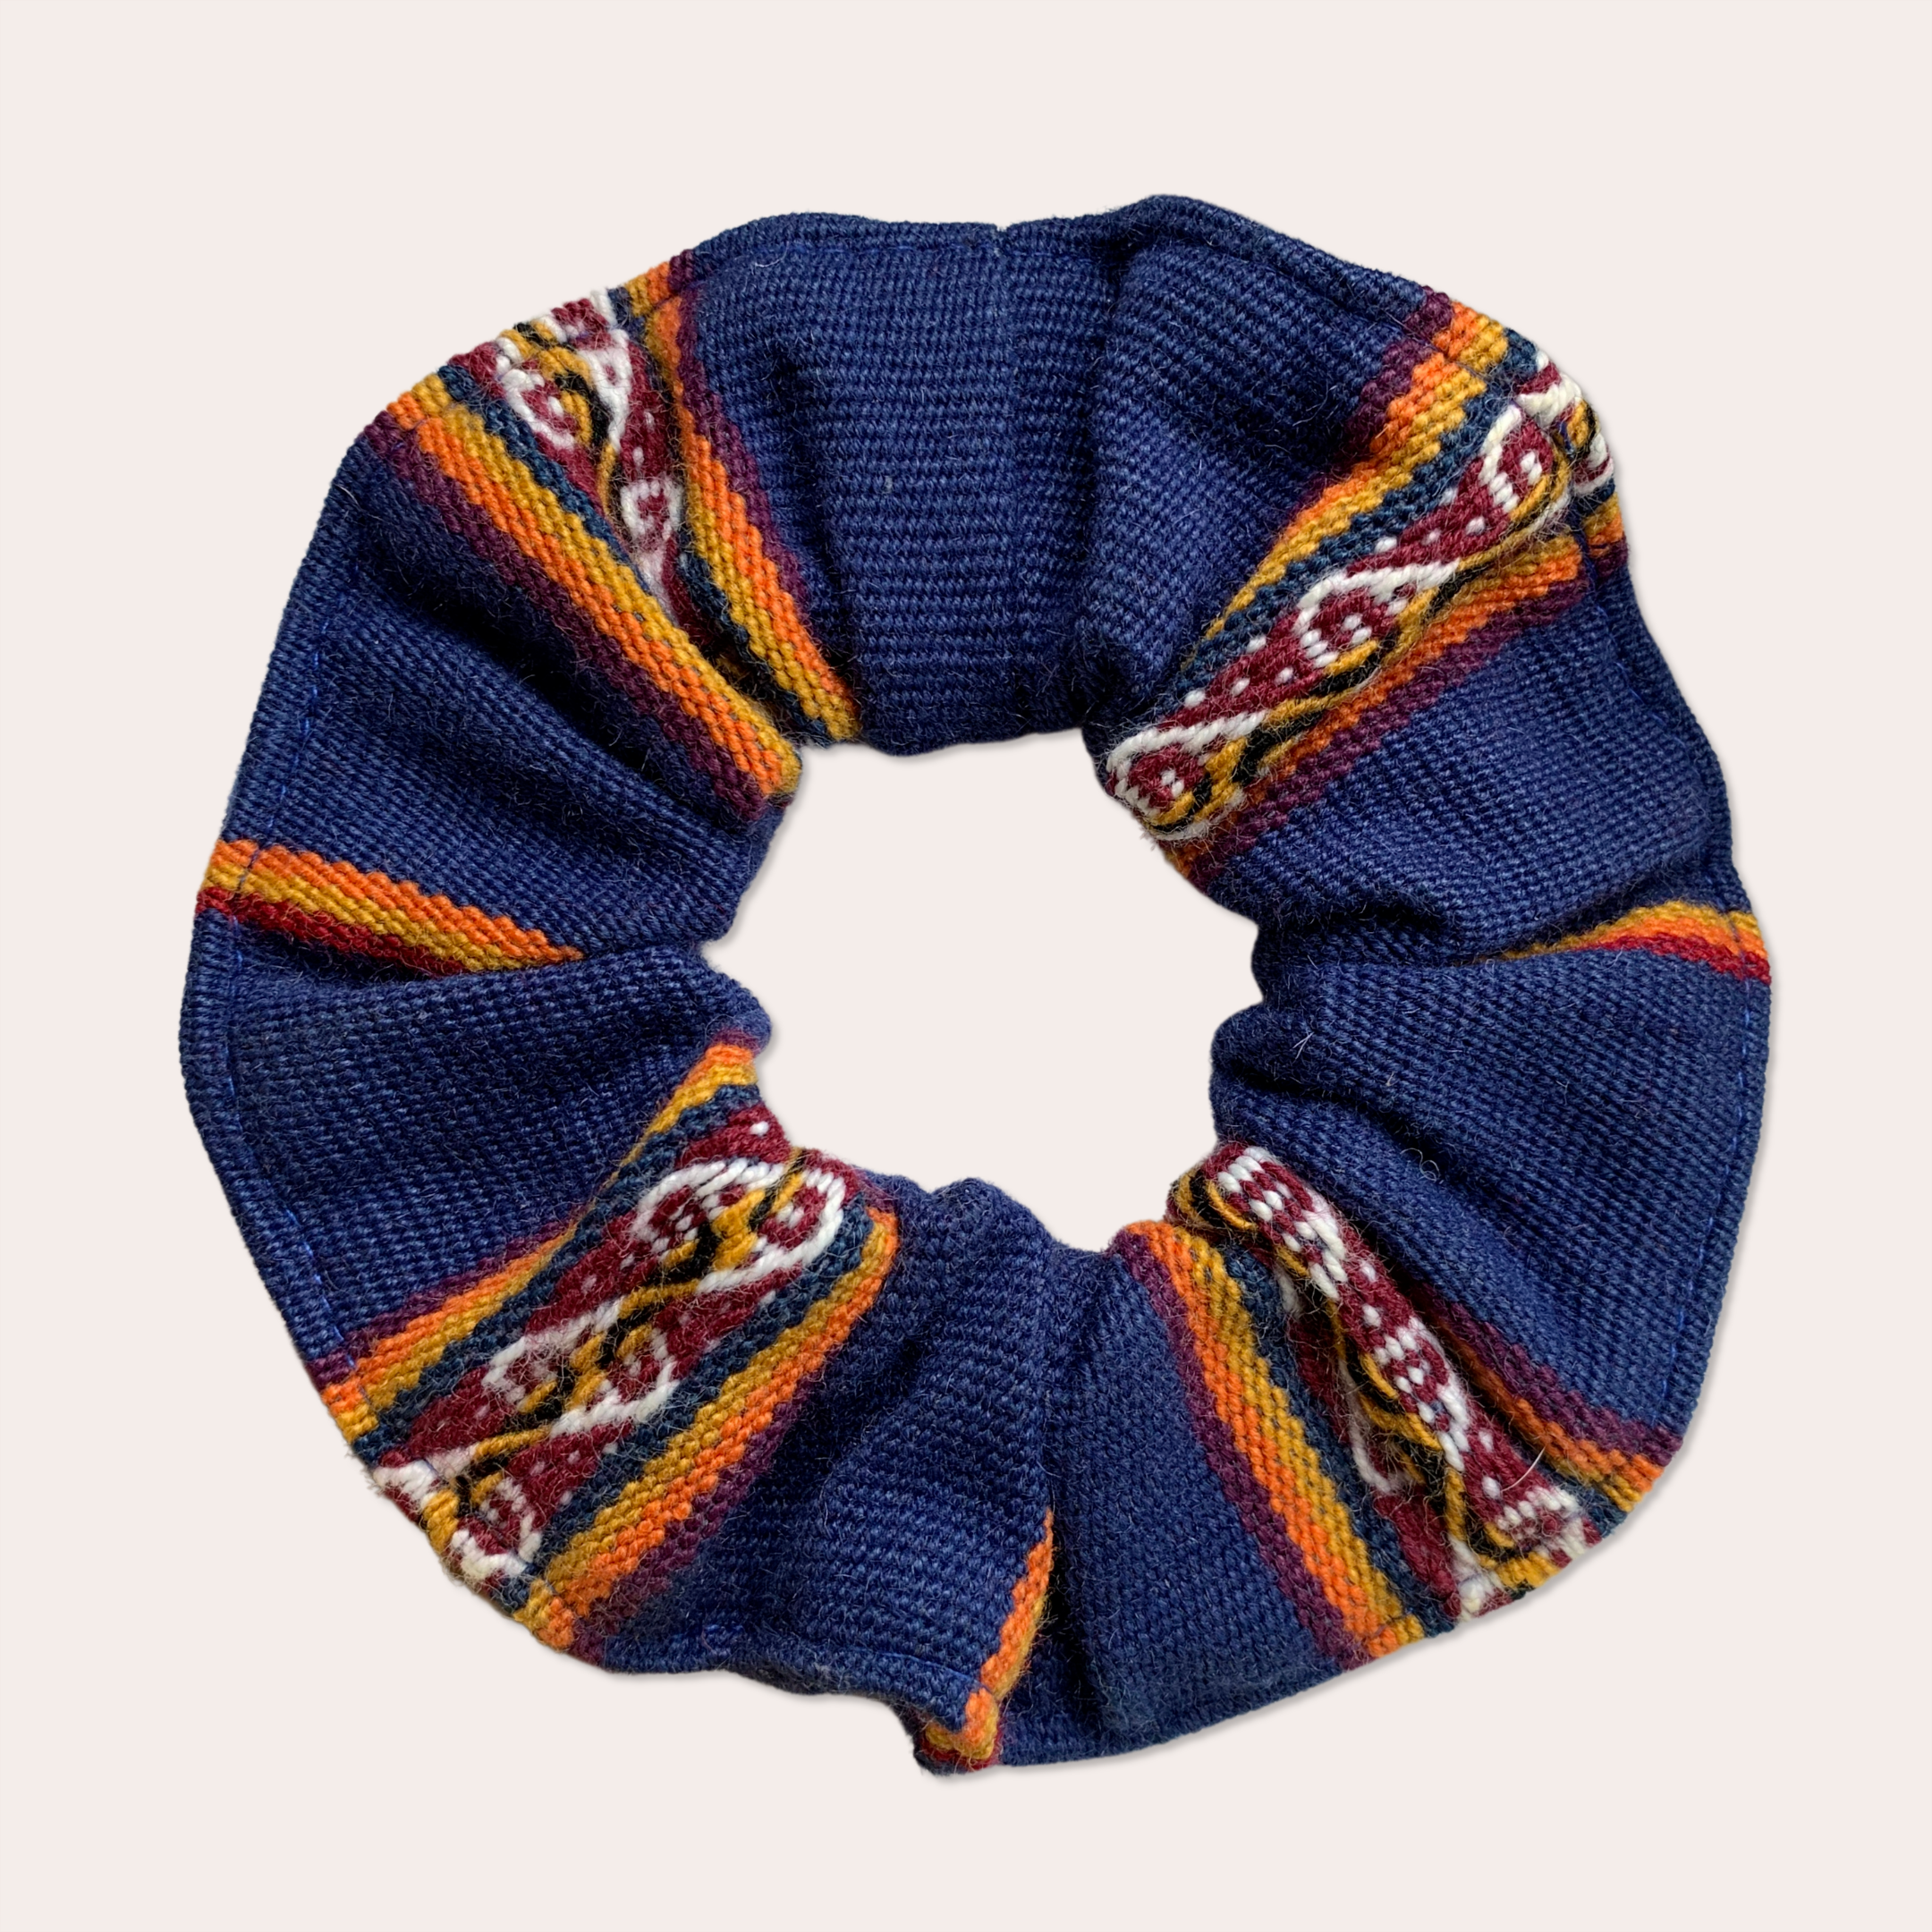 Oversized blue Peruvian scrunchie